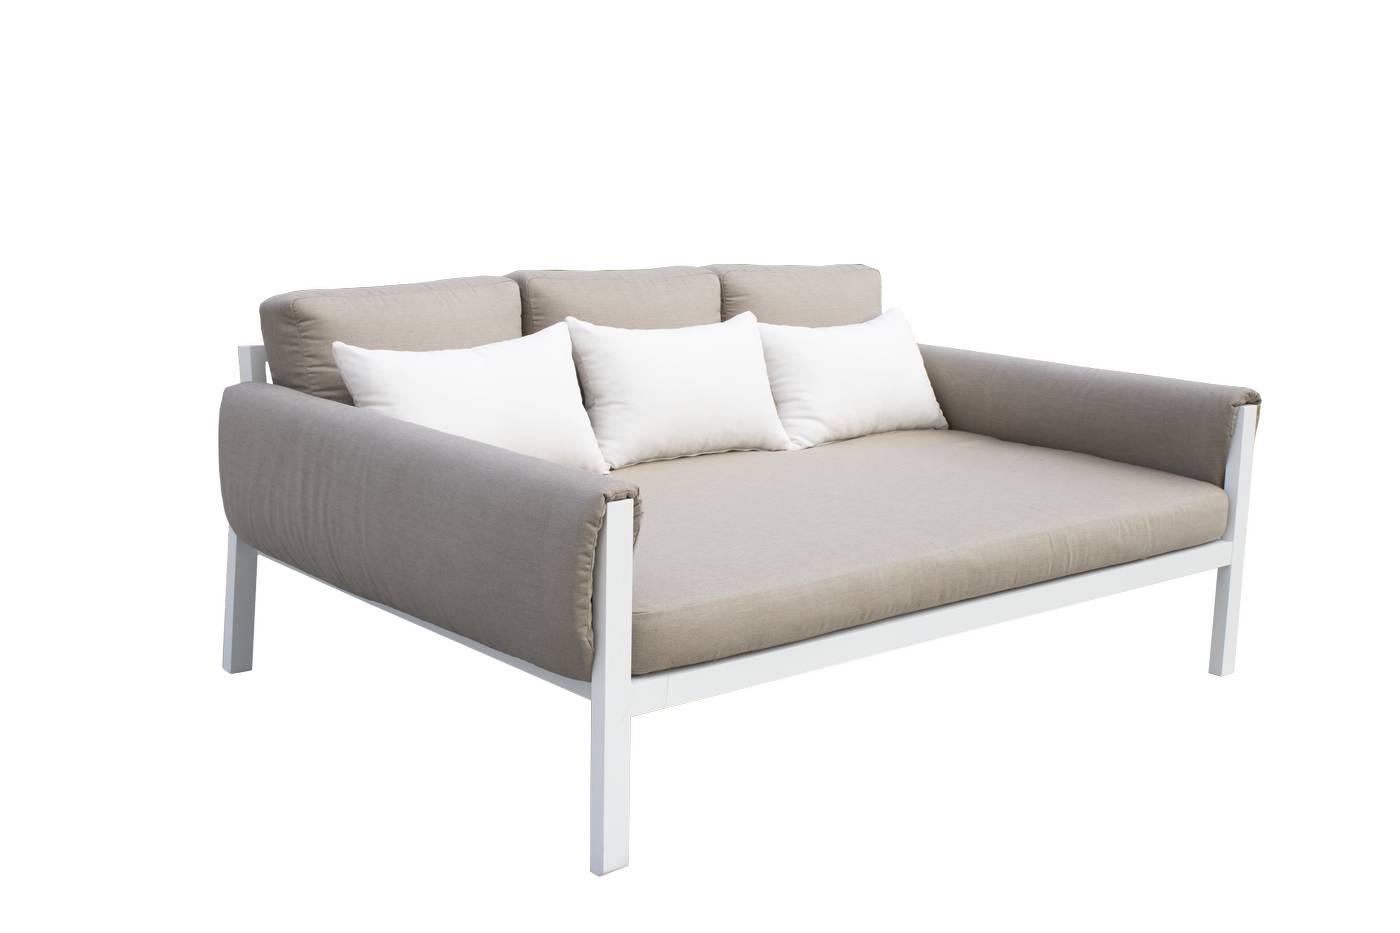 Set Sofá/Cama Arizona-38 - Conjunto aluminio con opción de cojines en los brazos: sofá/cama de 3 plazas + 2 sillones + 1 mesa de centro. Color: blanco, antracita, marrón, champagne o plata.